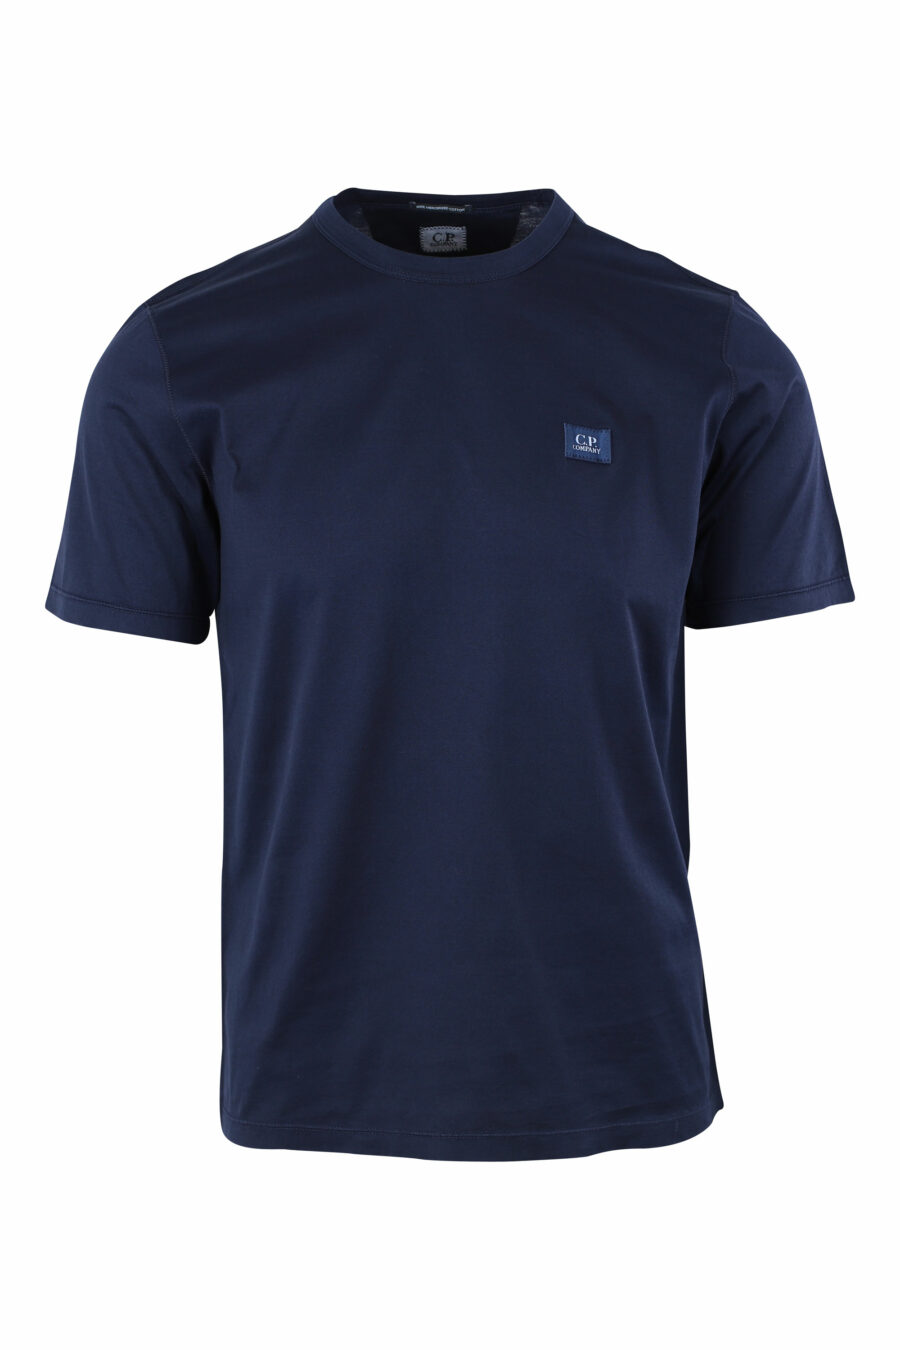 Camiseta azul oscuro con minilogo parche - IMG 9651